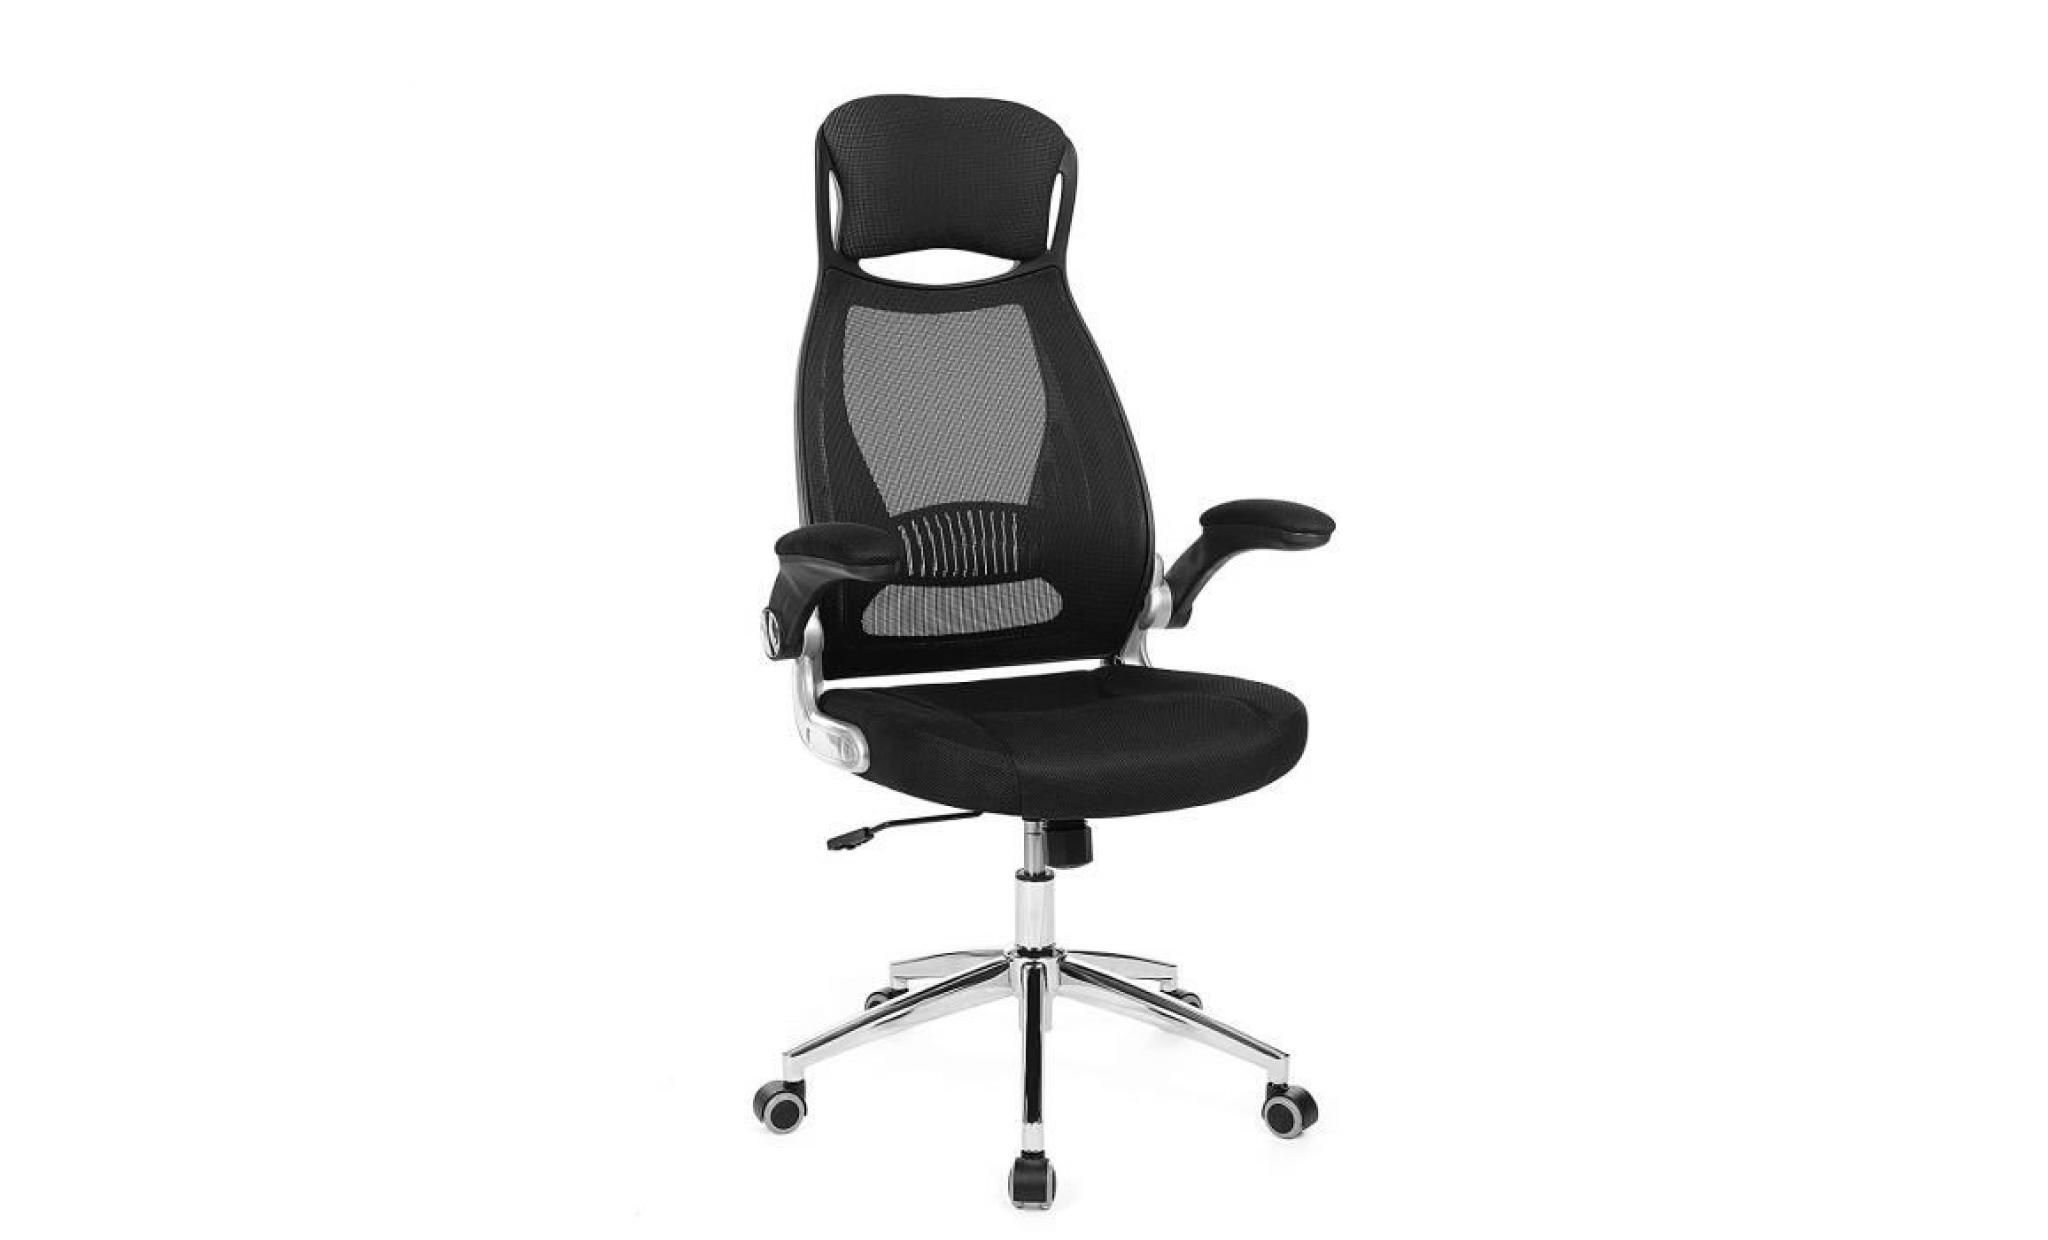 songmics fauteuil de bureau pivotant hauteur réglable 117 126,5 cm chaise siège accoudoirs réglables obn86bk